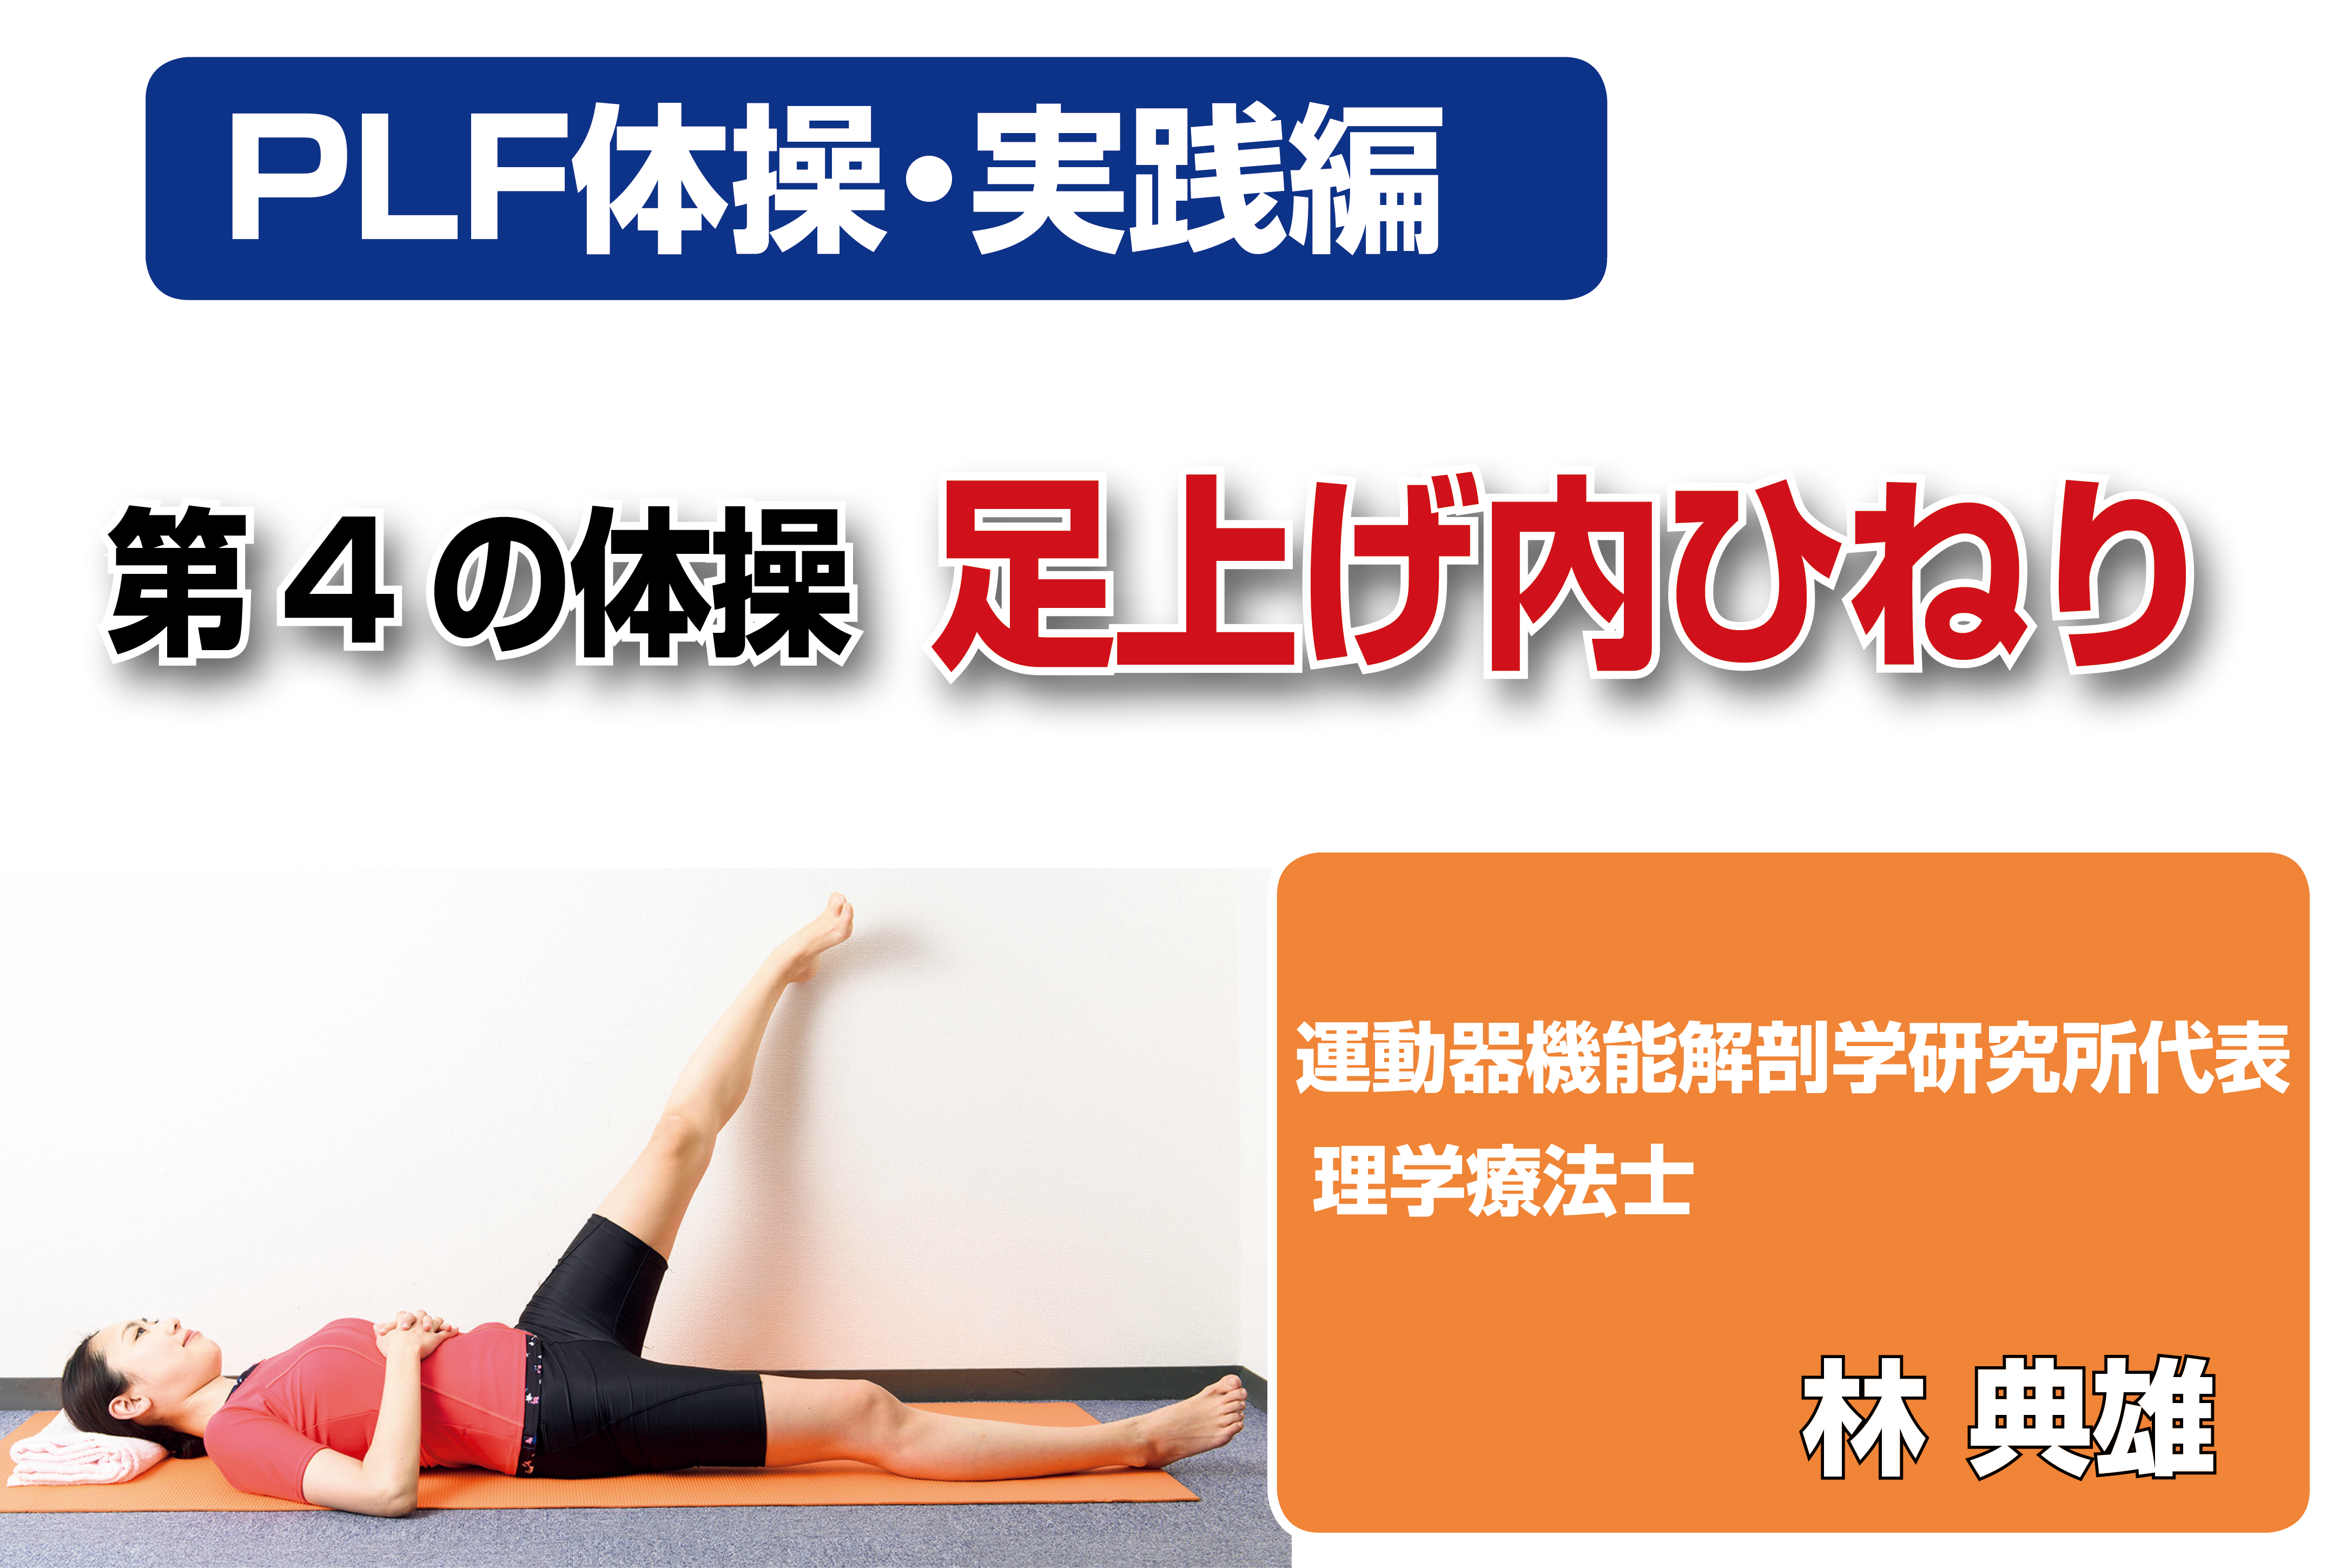 Plf体操 6 9 実践編 足上げ内ひねりで 大腿筋膜張筋を柔軟にする 第4の体操 カラダネ